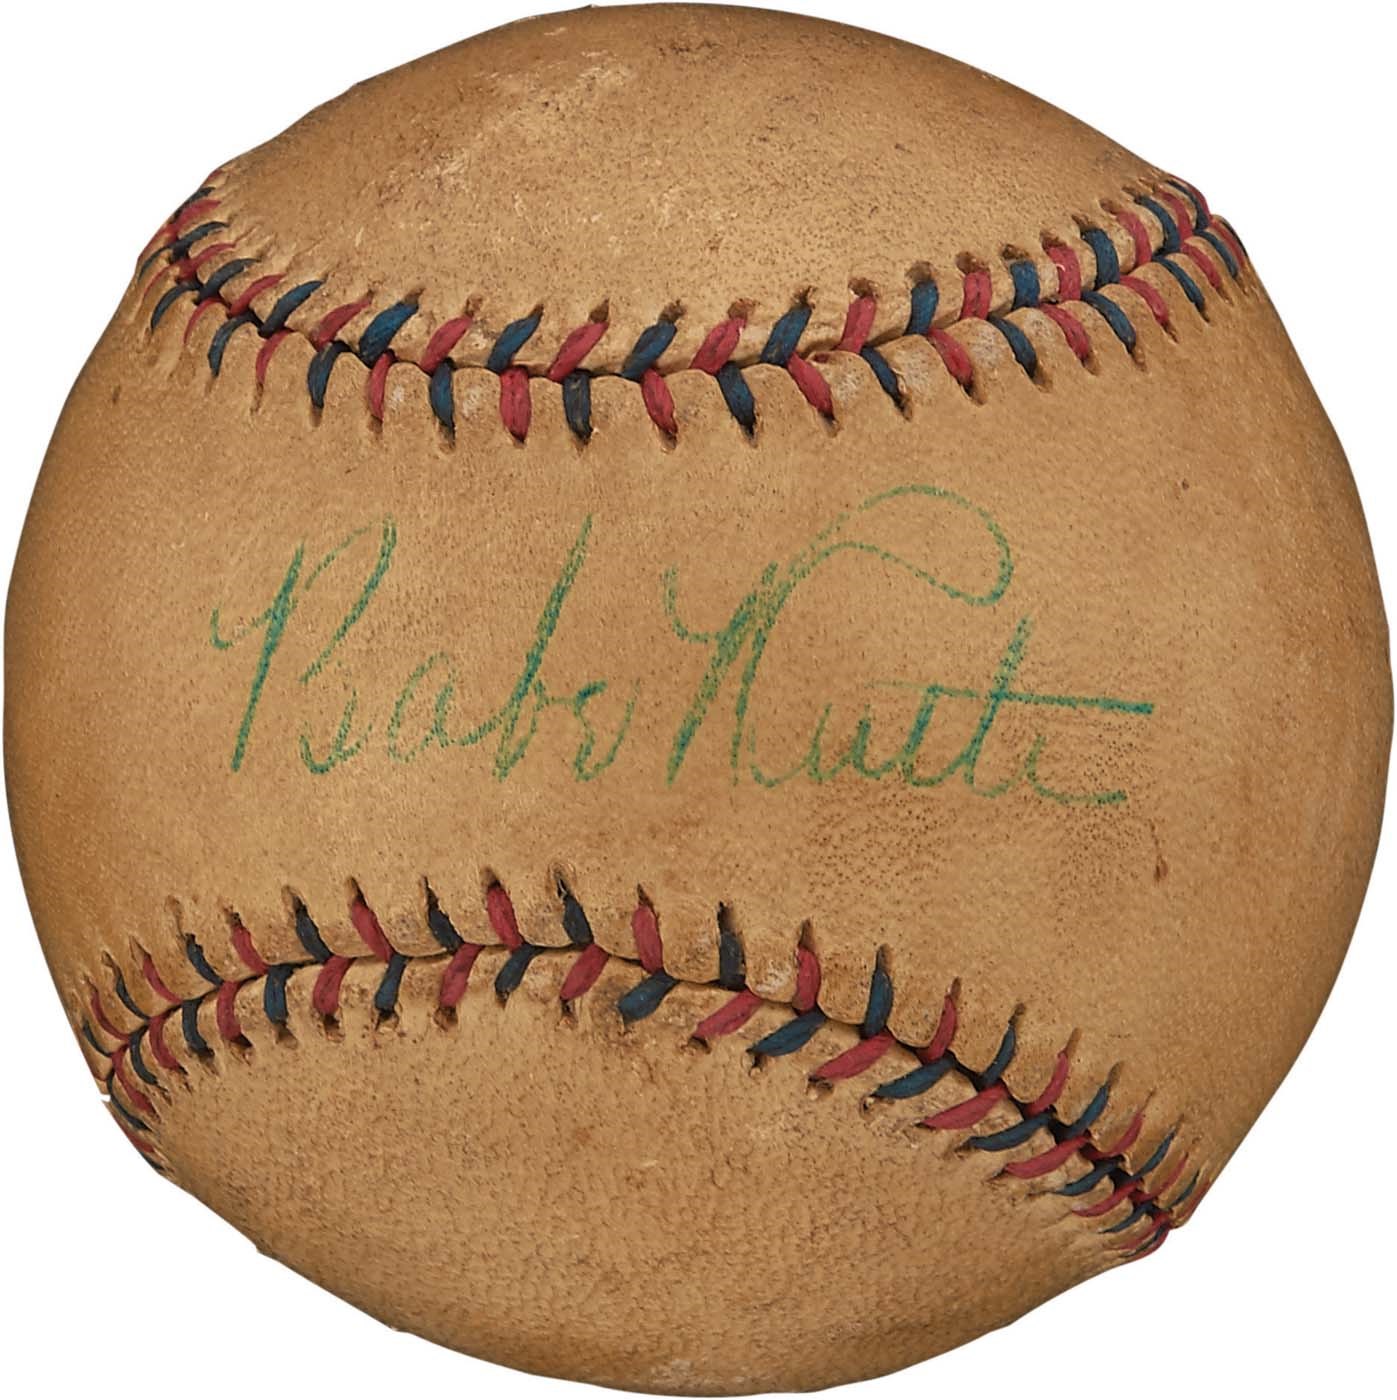 - 1928-32 Babe Ruth Single-Signed Baseball (PSA)